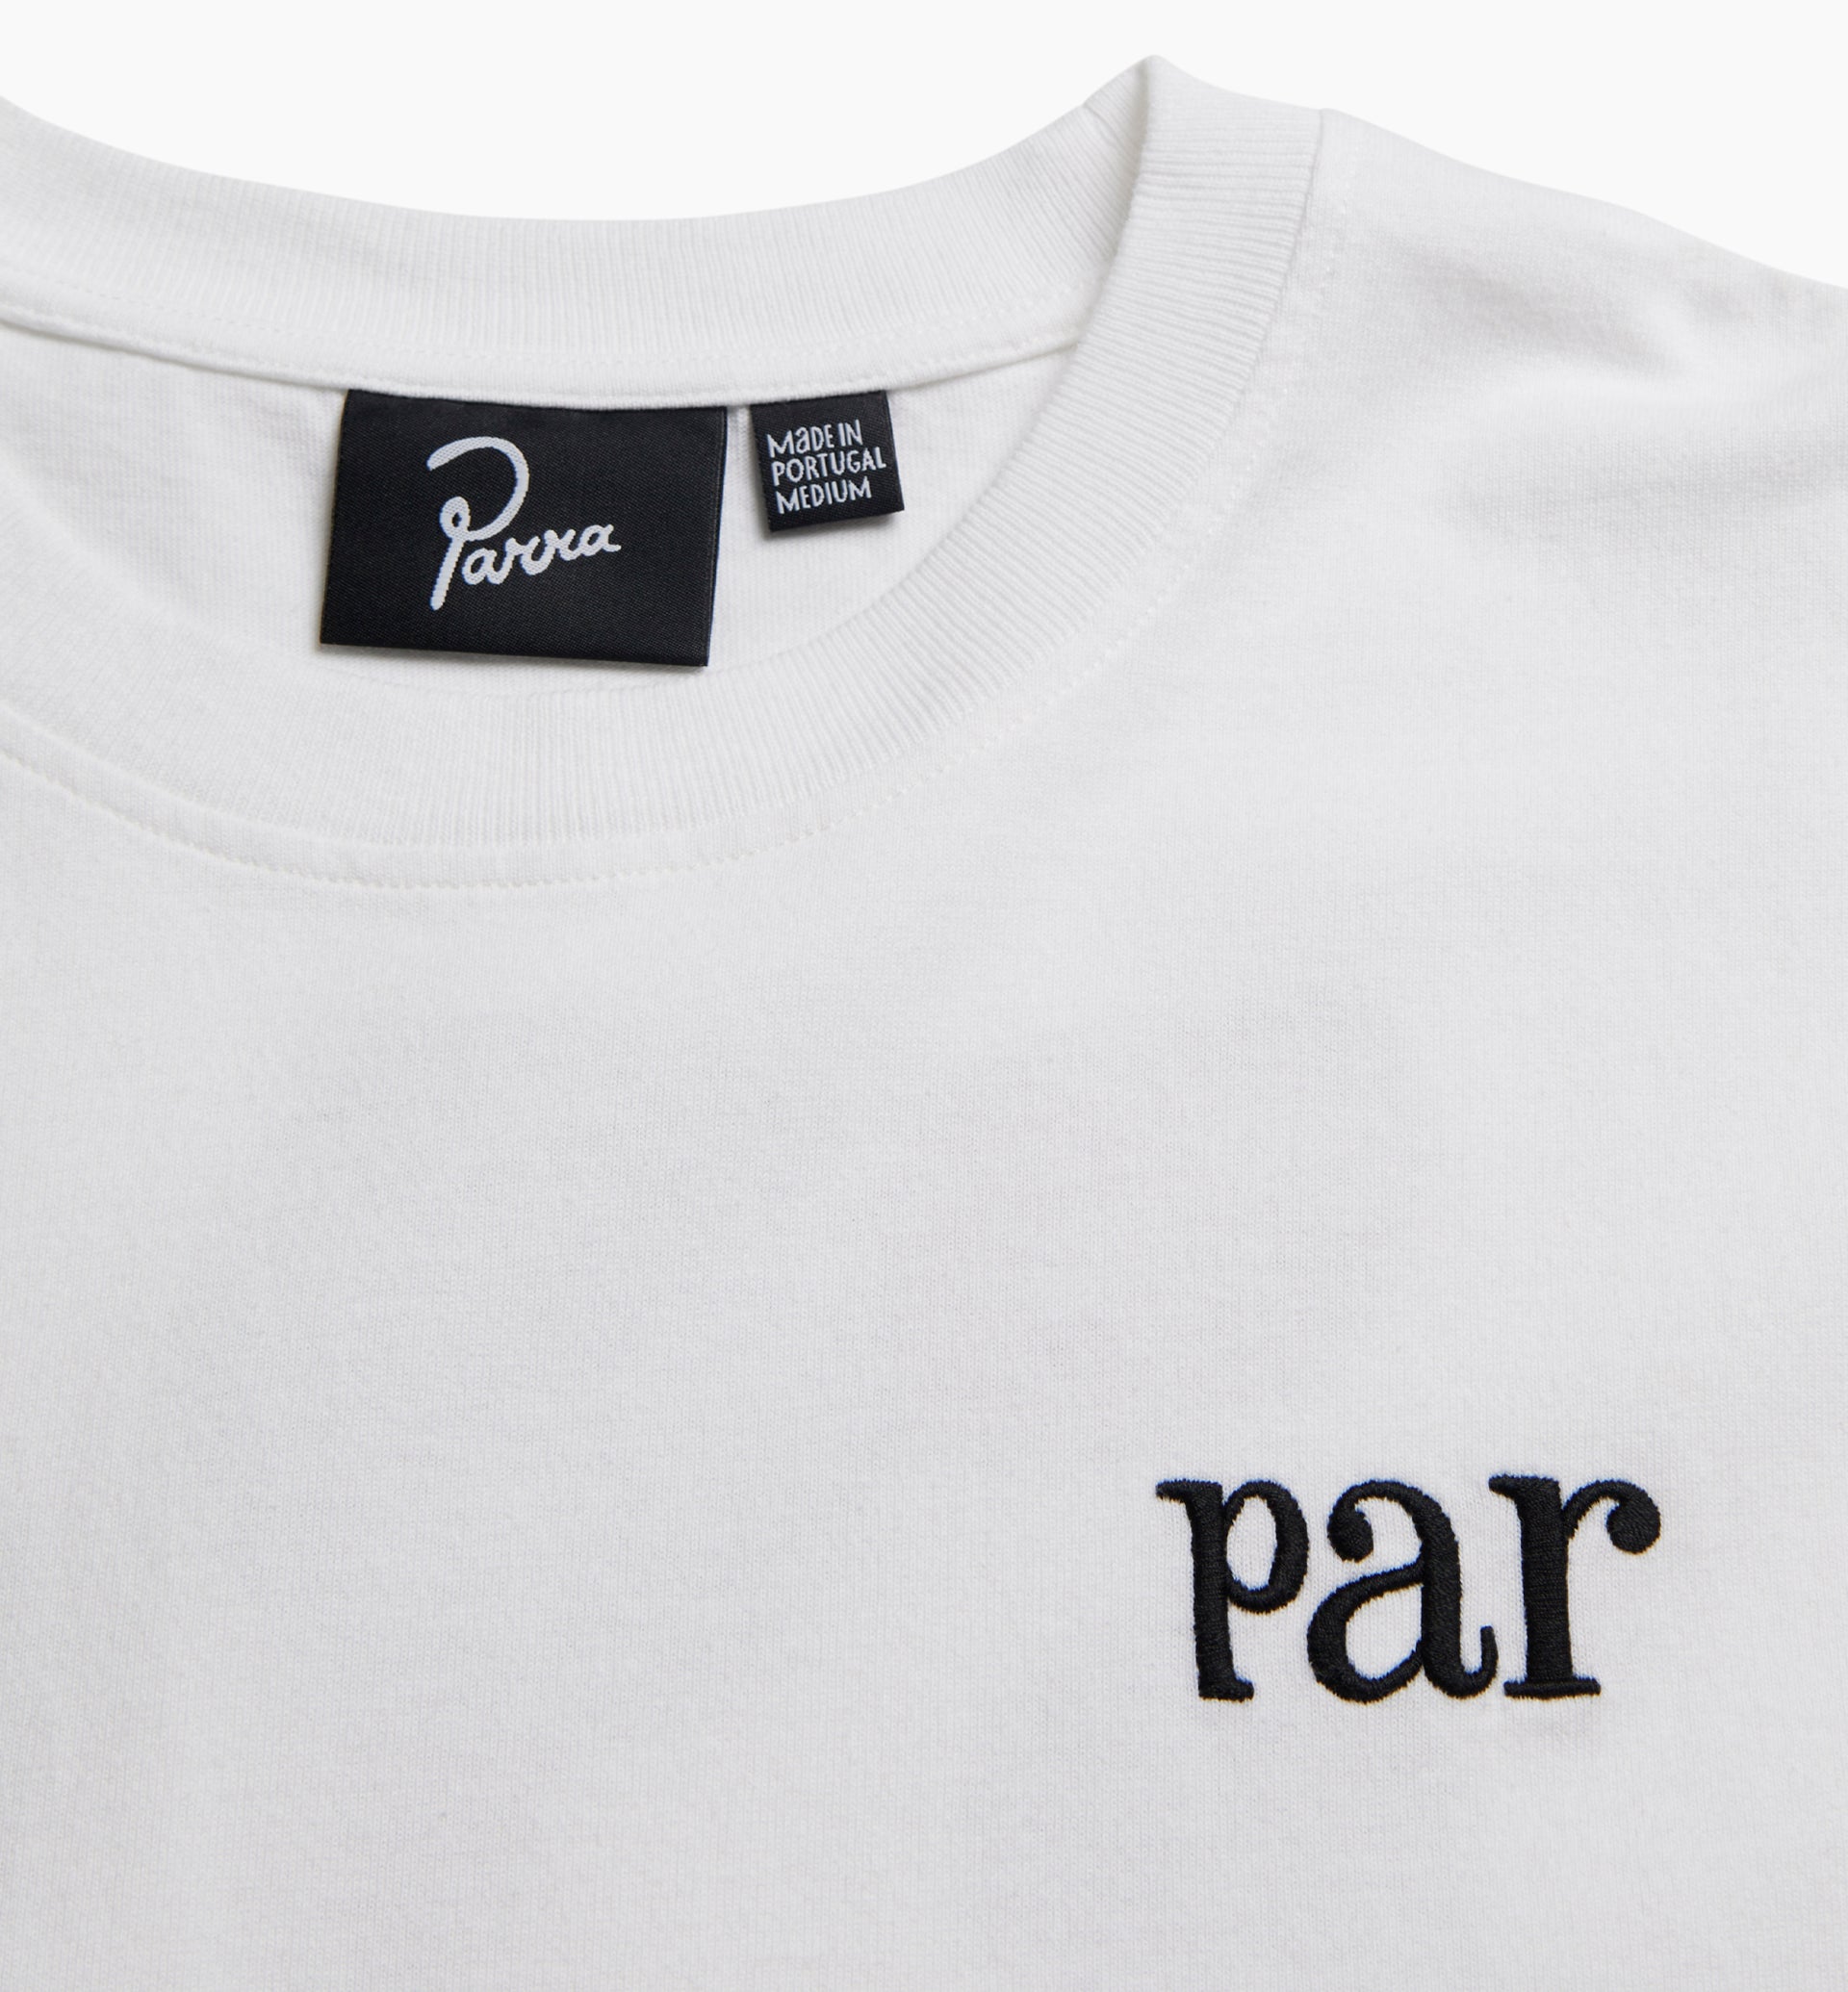 Parra - rug pull t-shirt